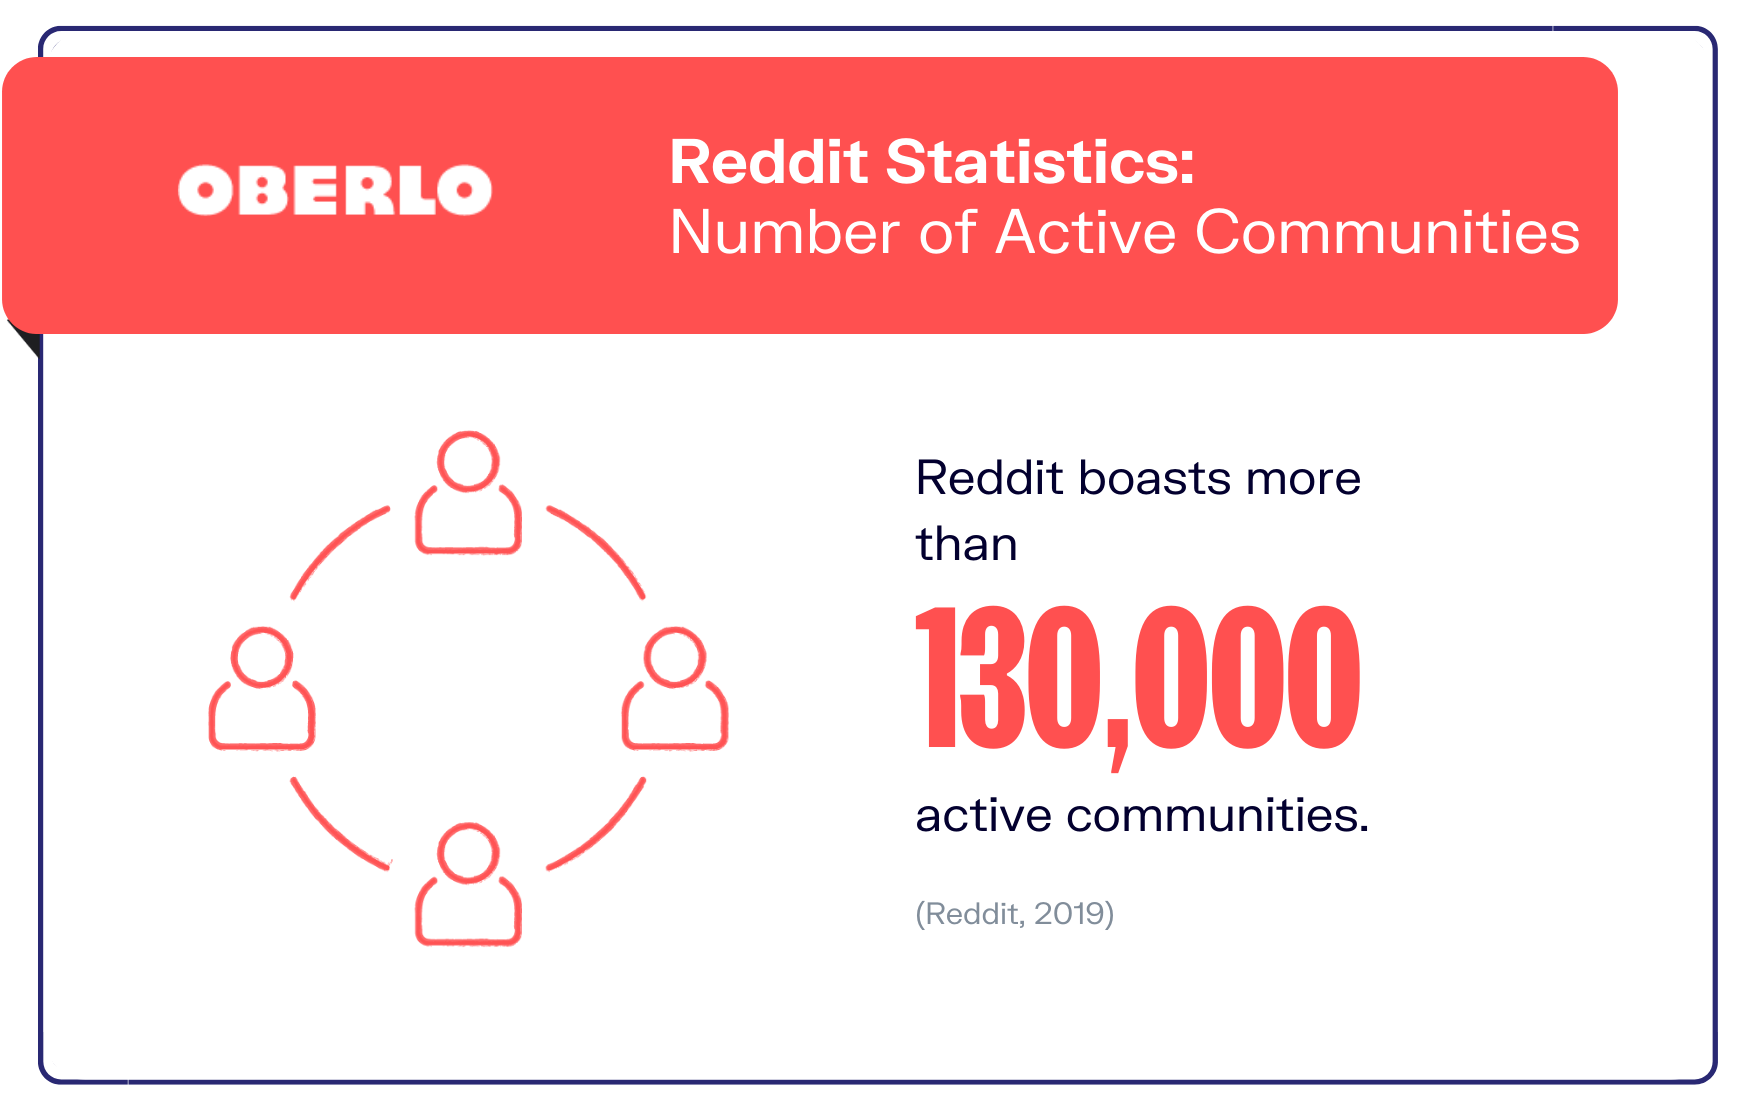 reddit statistics graphic7